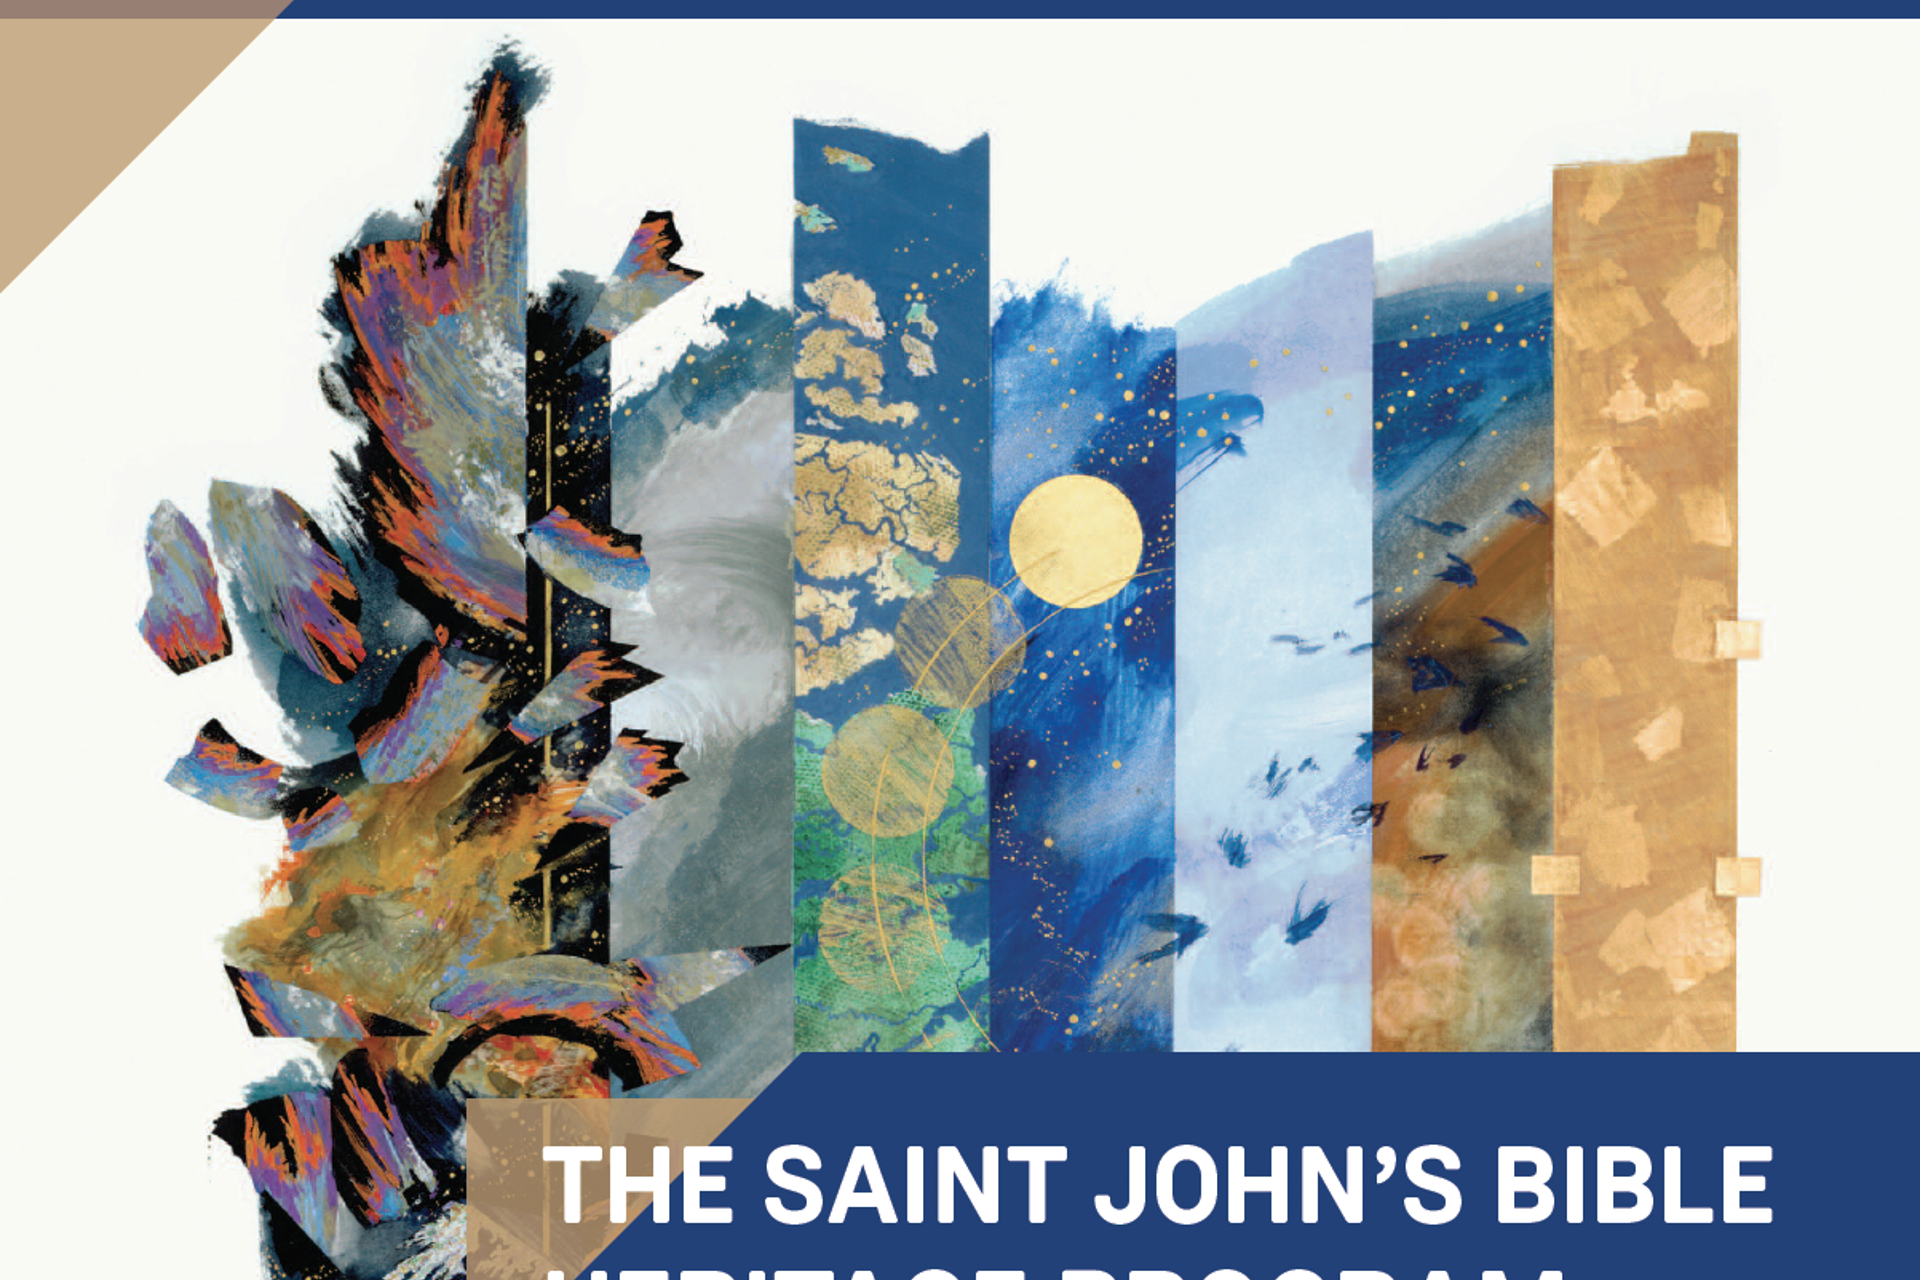 The Saint John's Bible Heritage Program